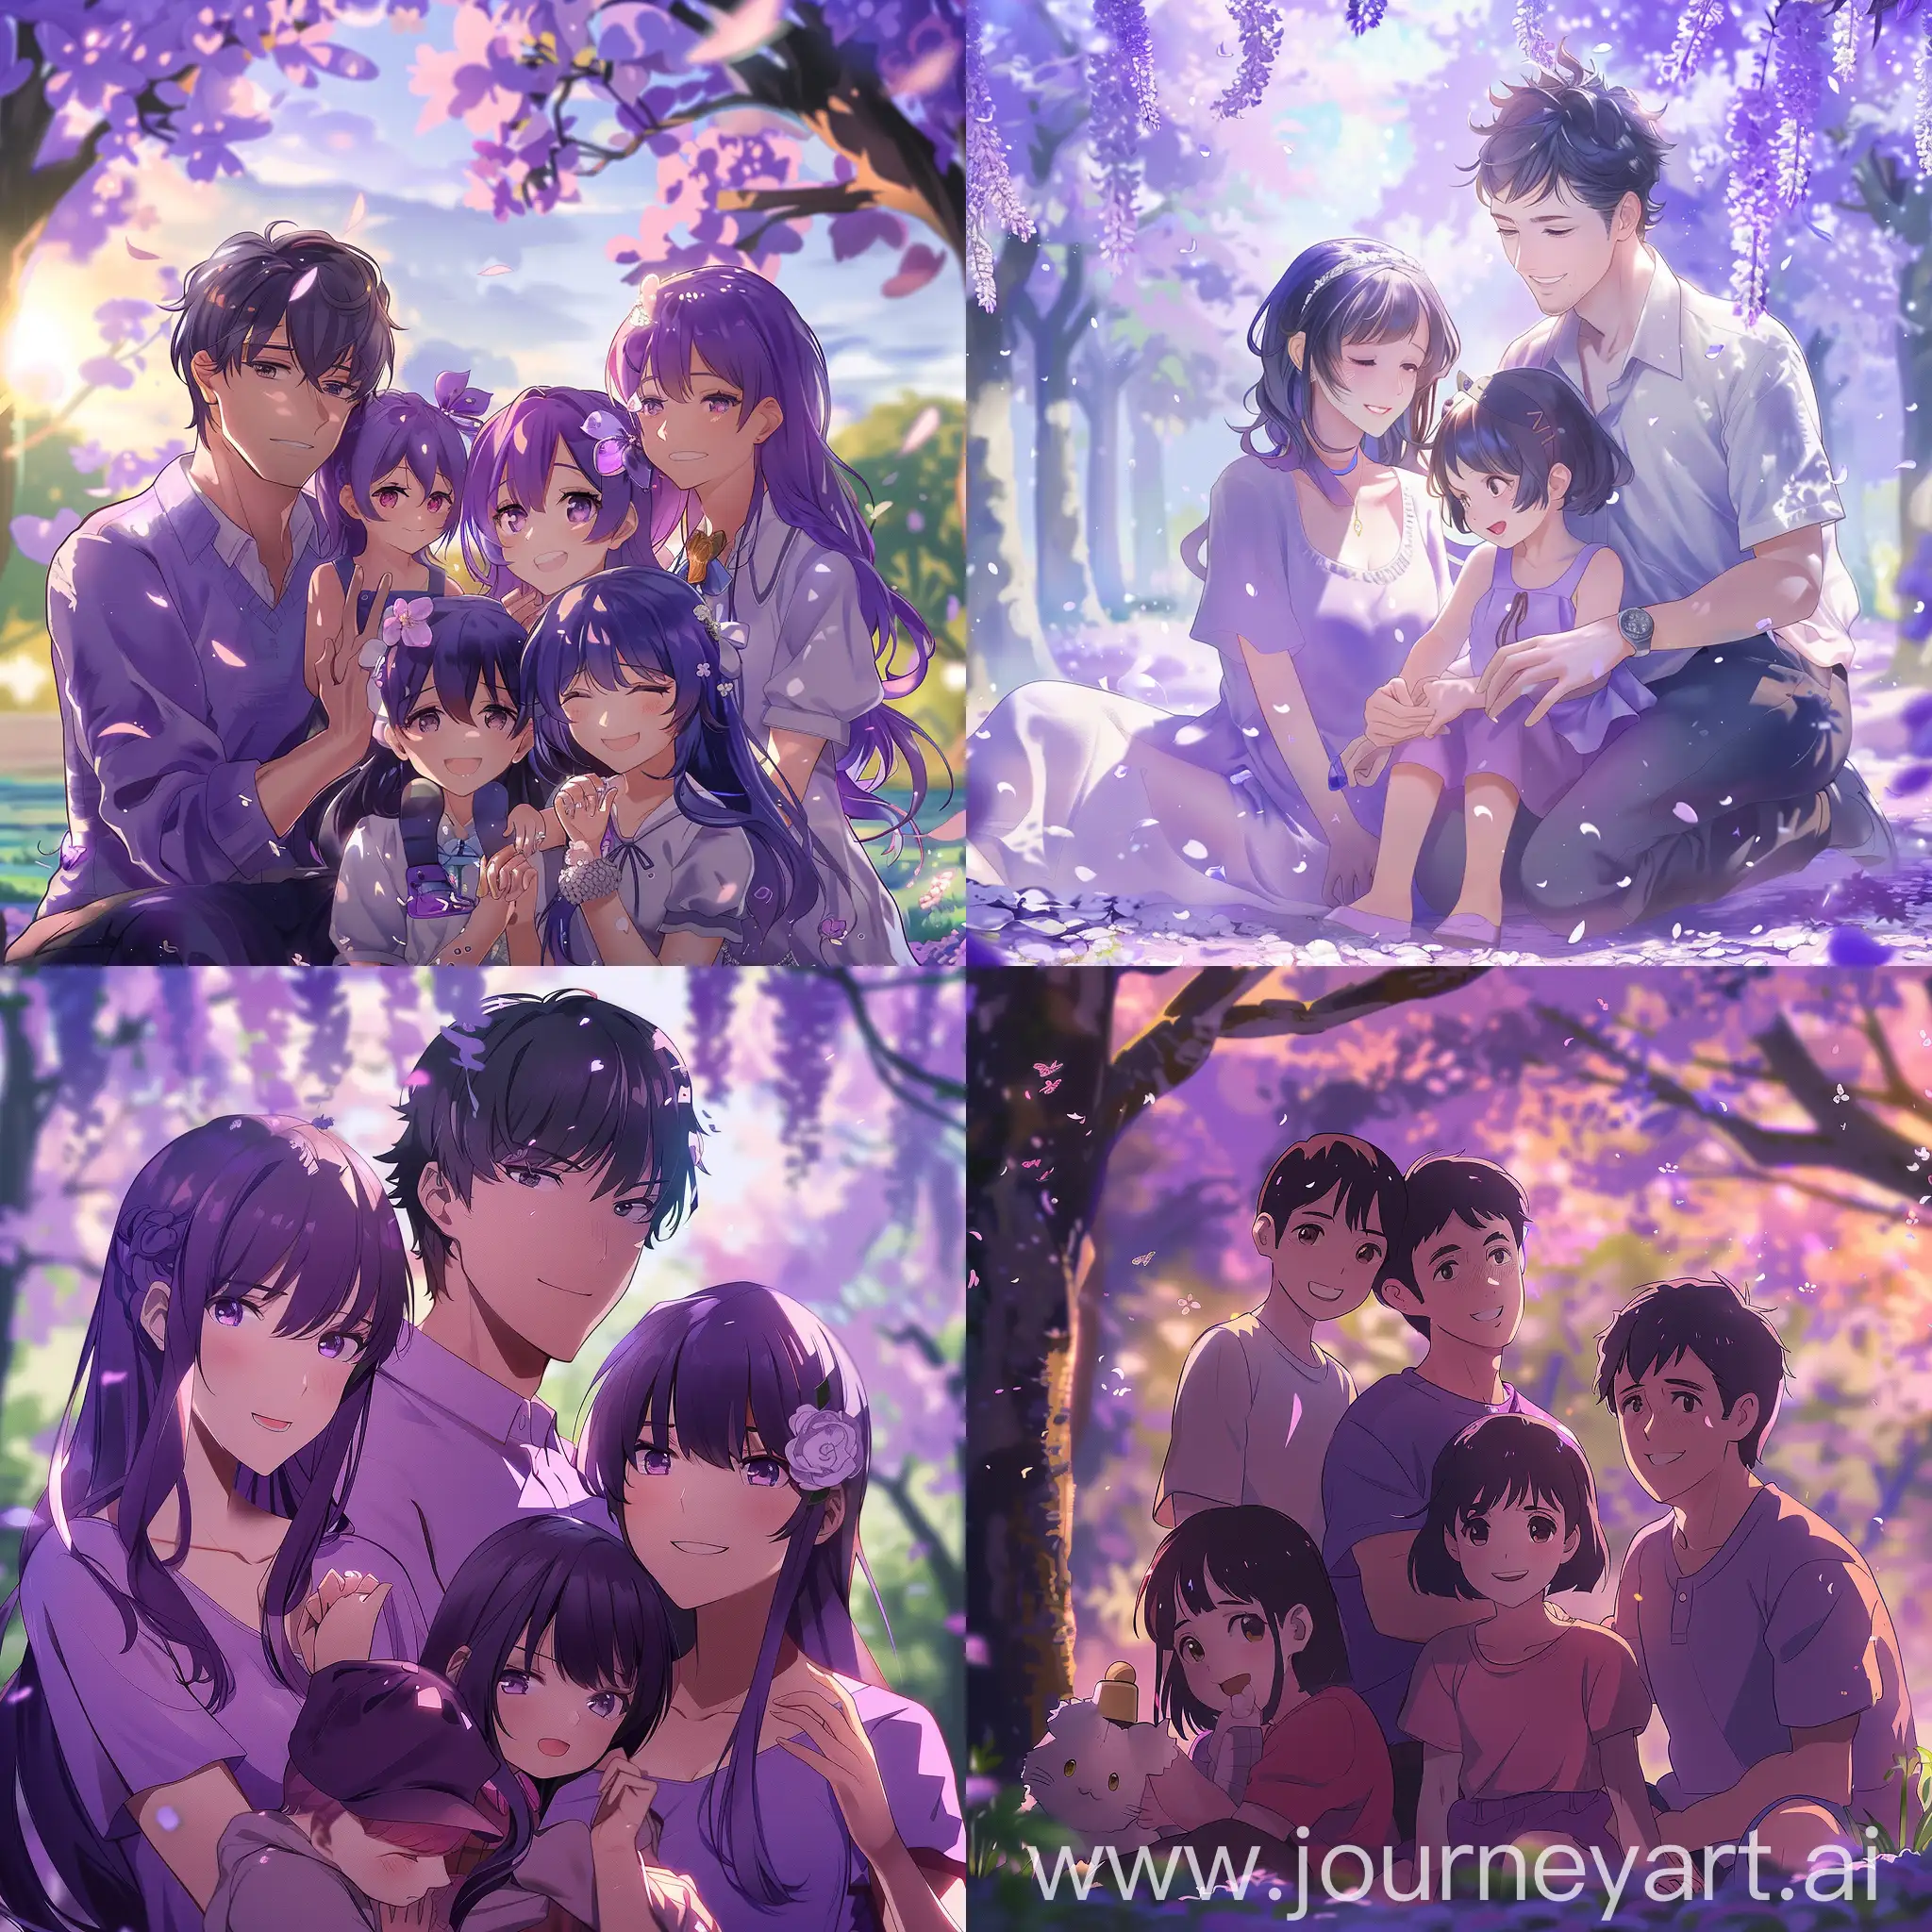 Спокойная семейная обстановка  где все такие счастливые , все в аниме стиле все очень красиво и фиолетово 4к full hd